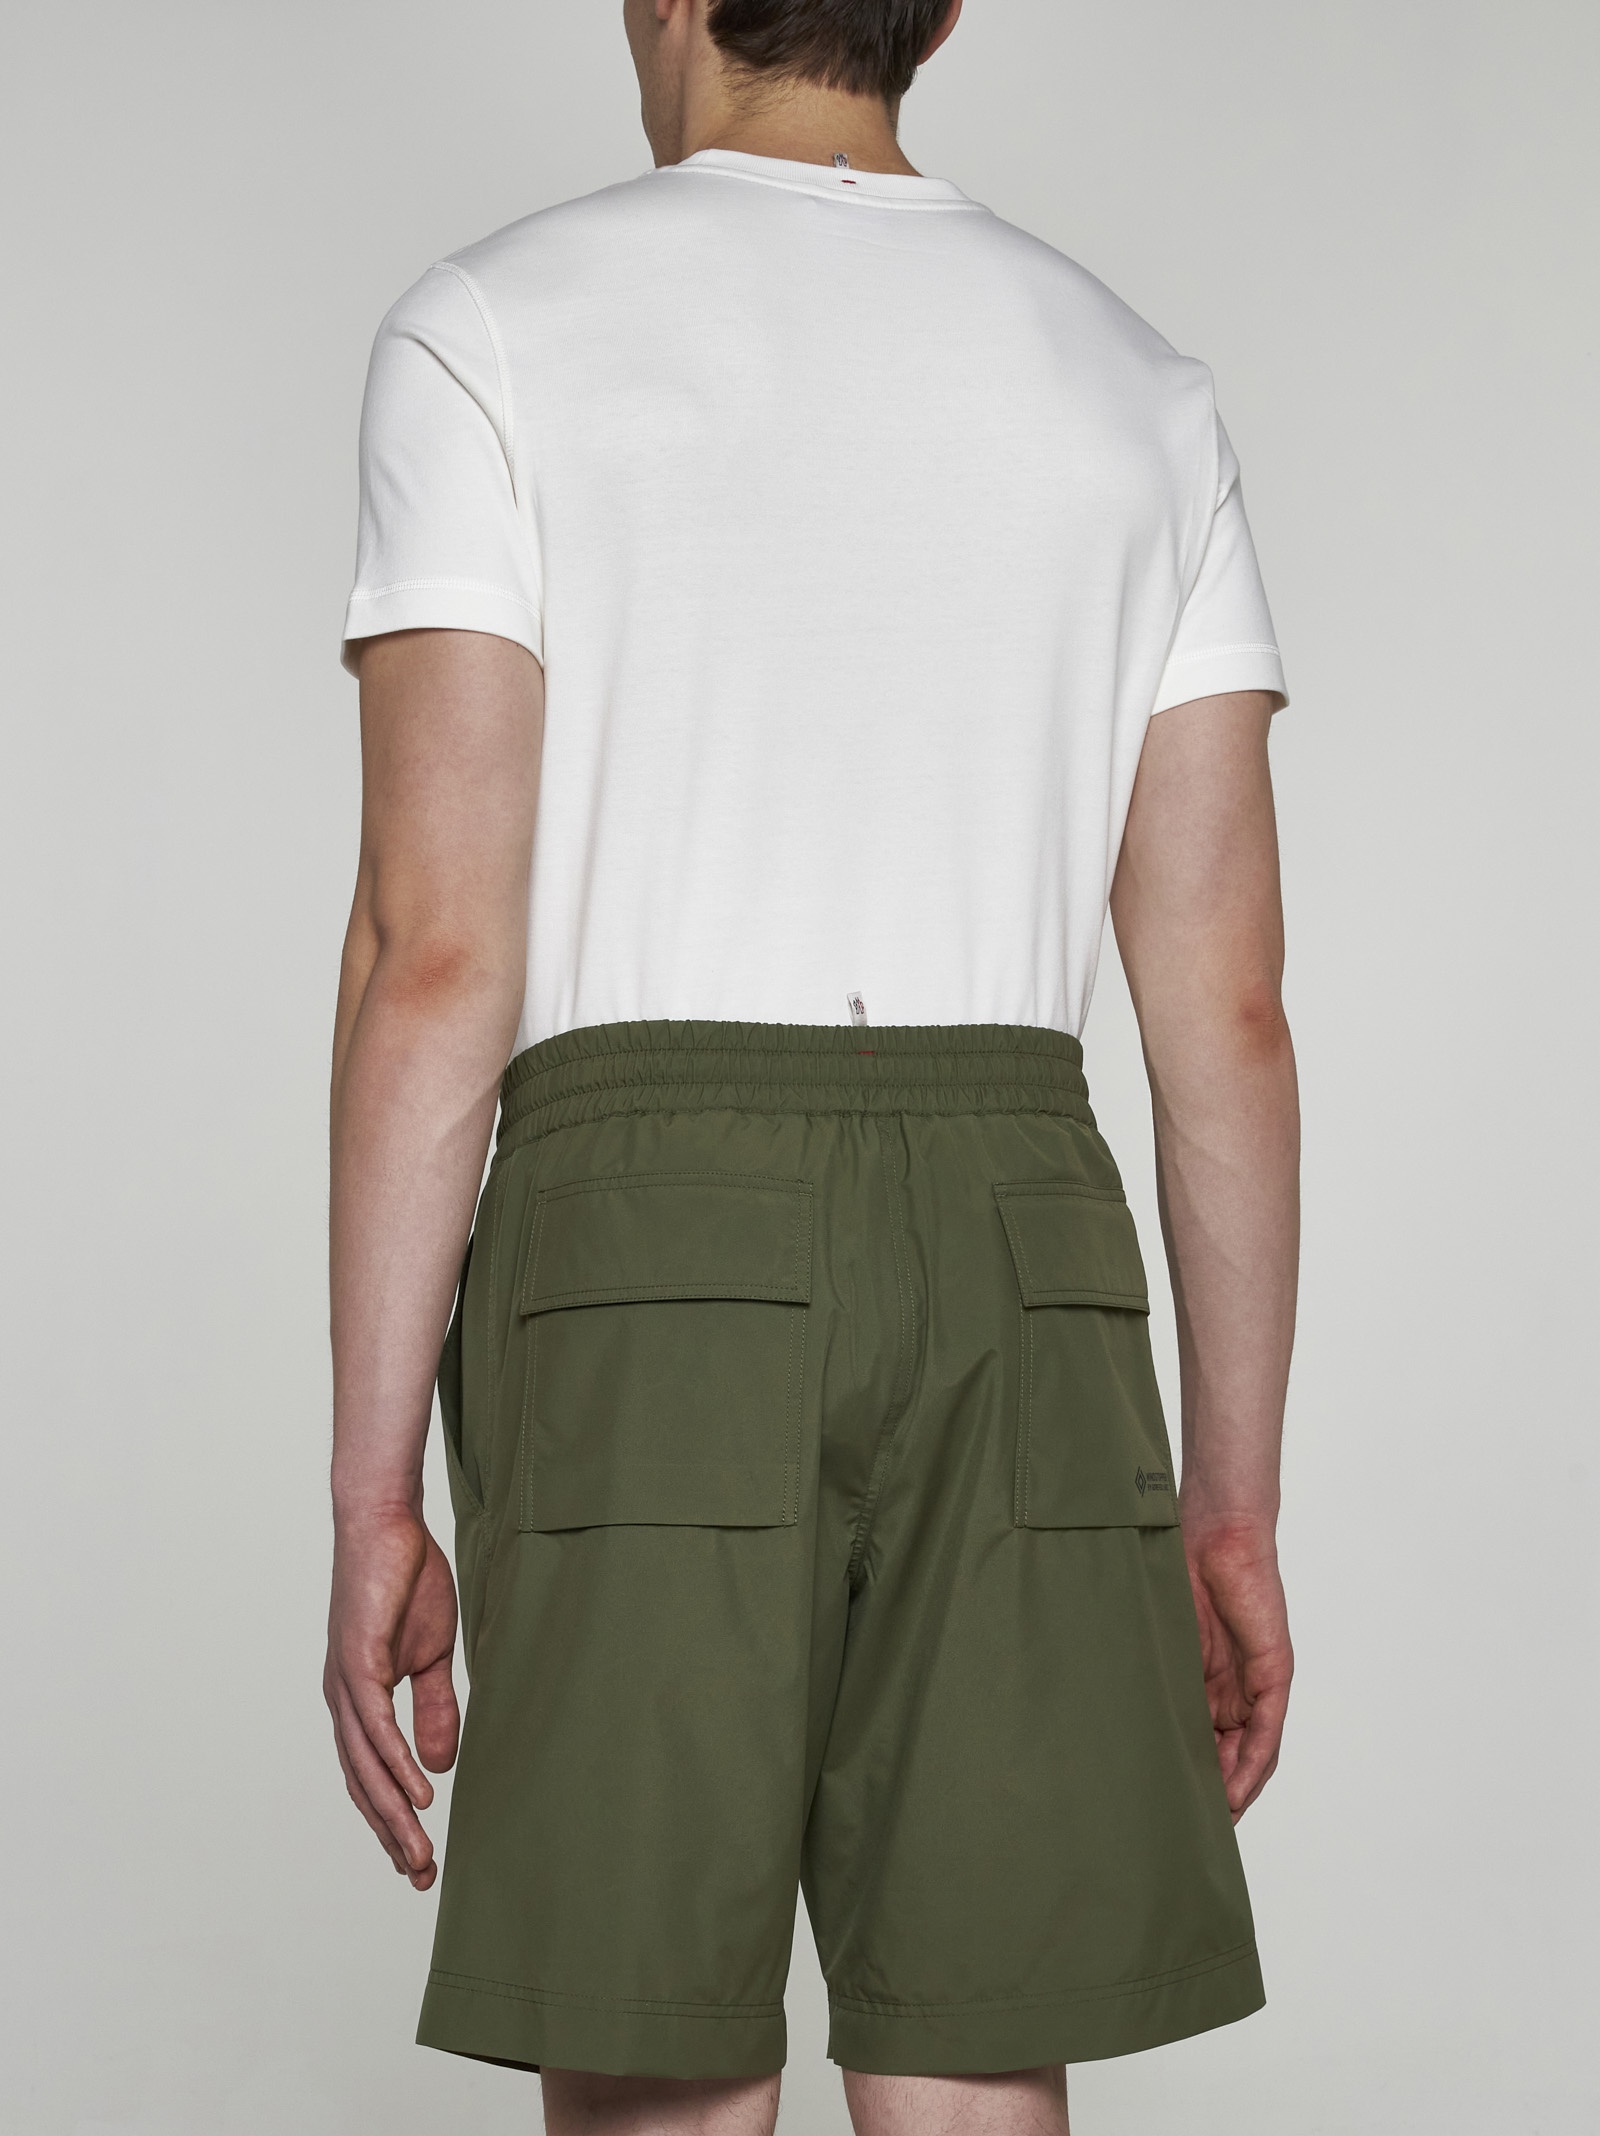 Nylon shorts - 4